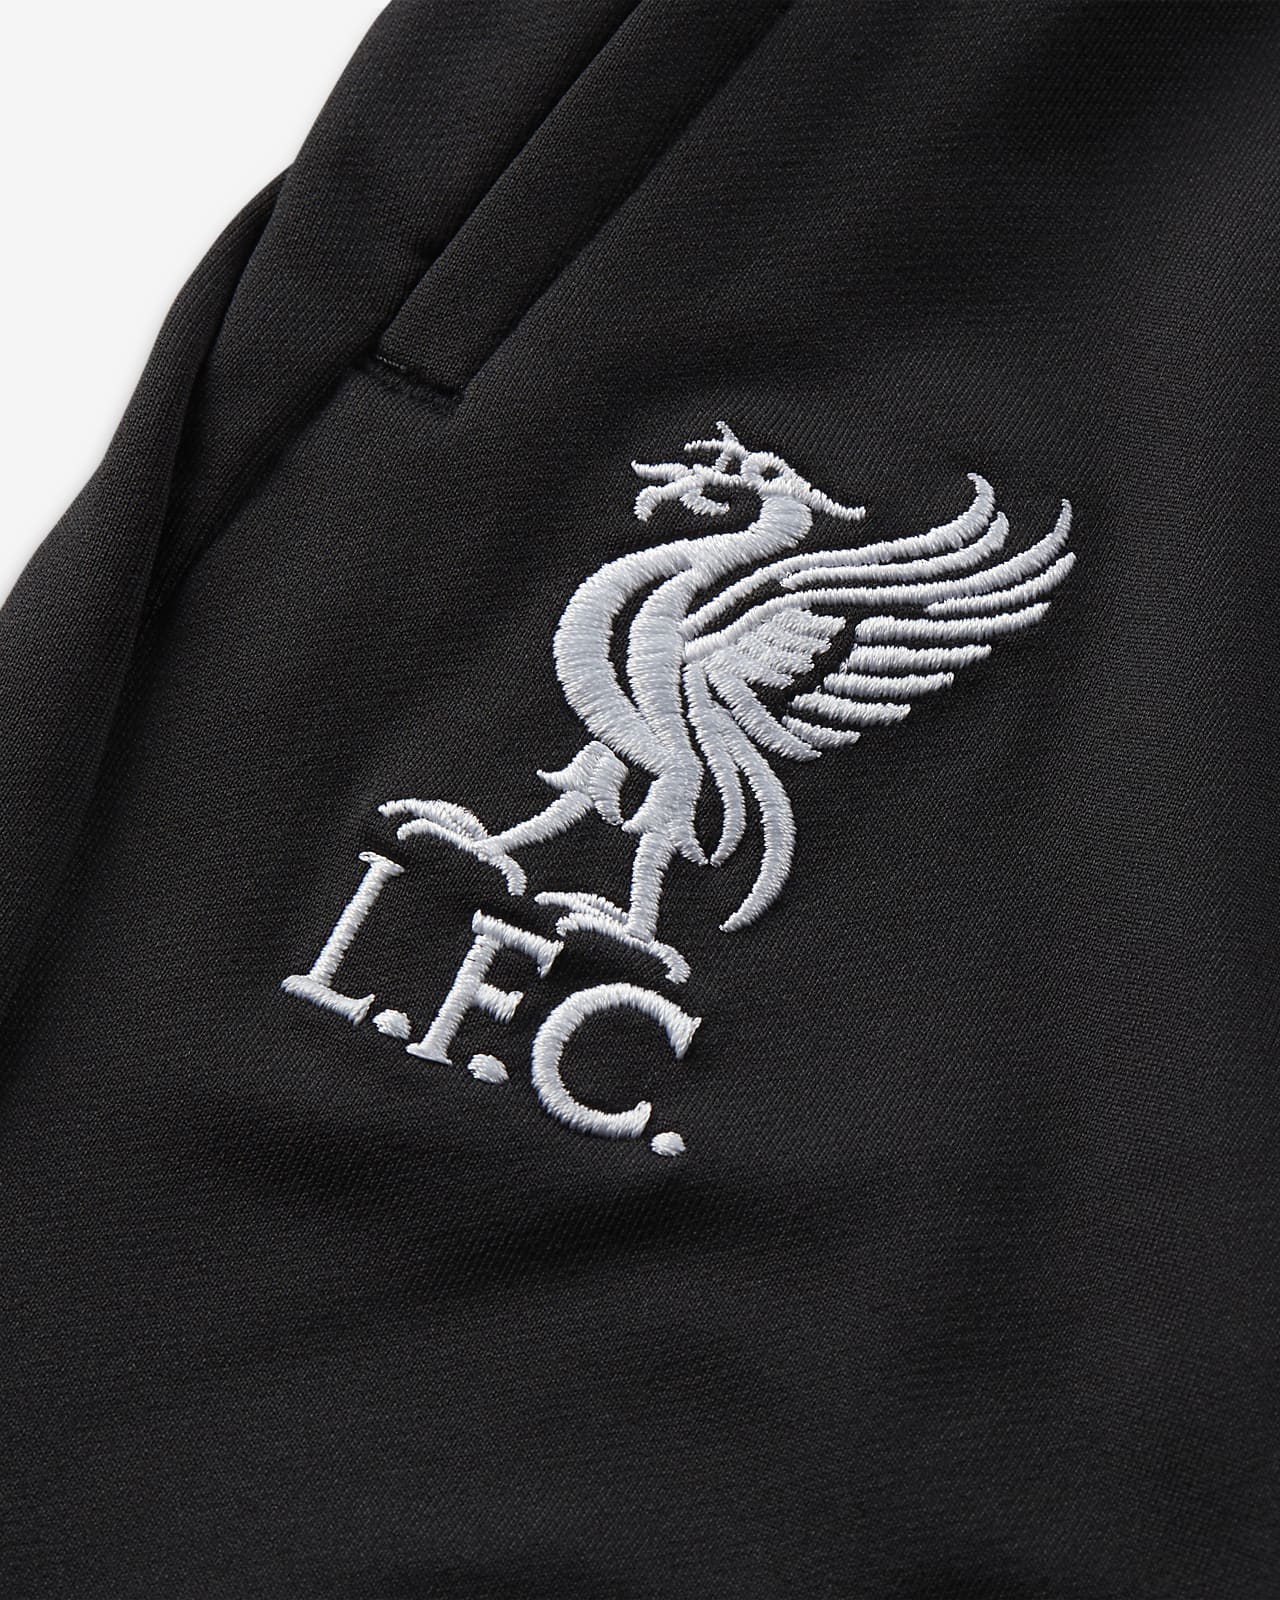 Liverpool F.C. Strike Women's Nike Dri-FIT Knit Football Pants